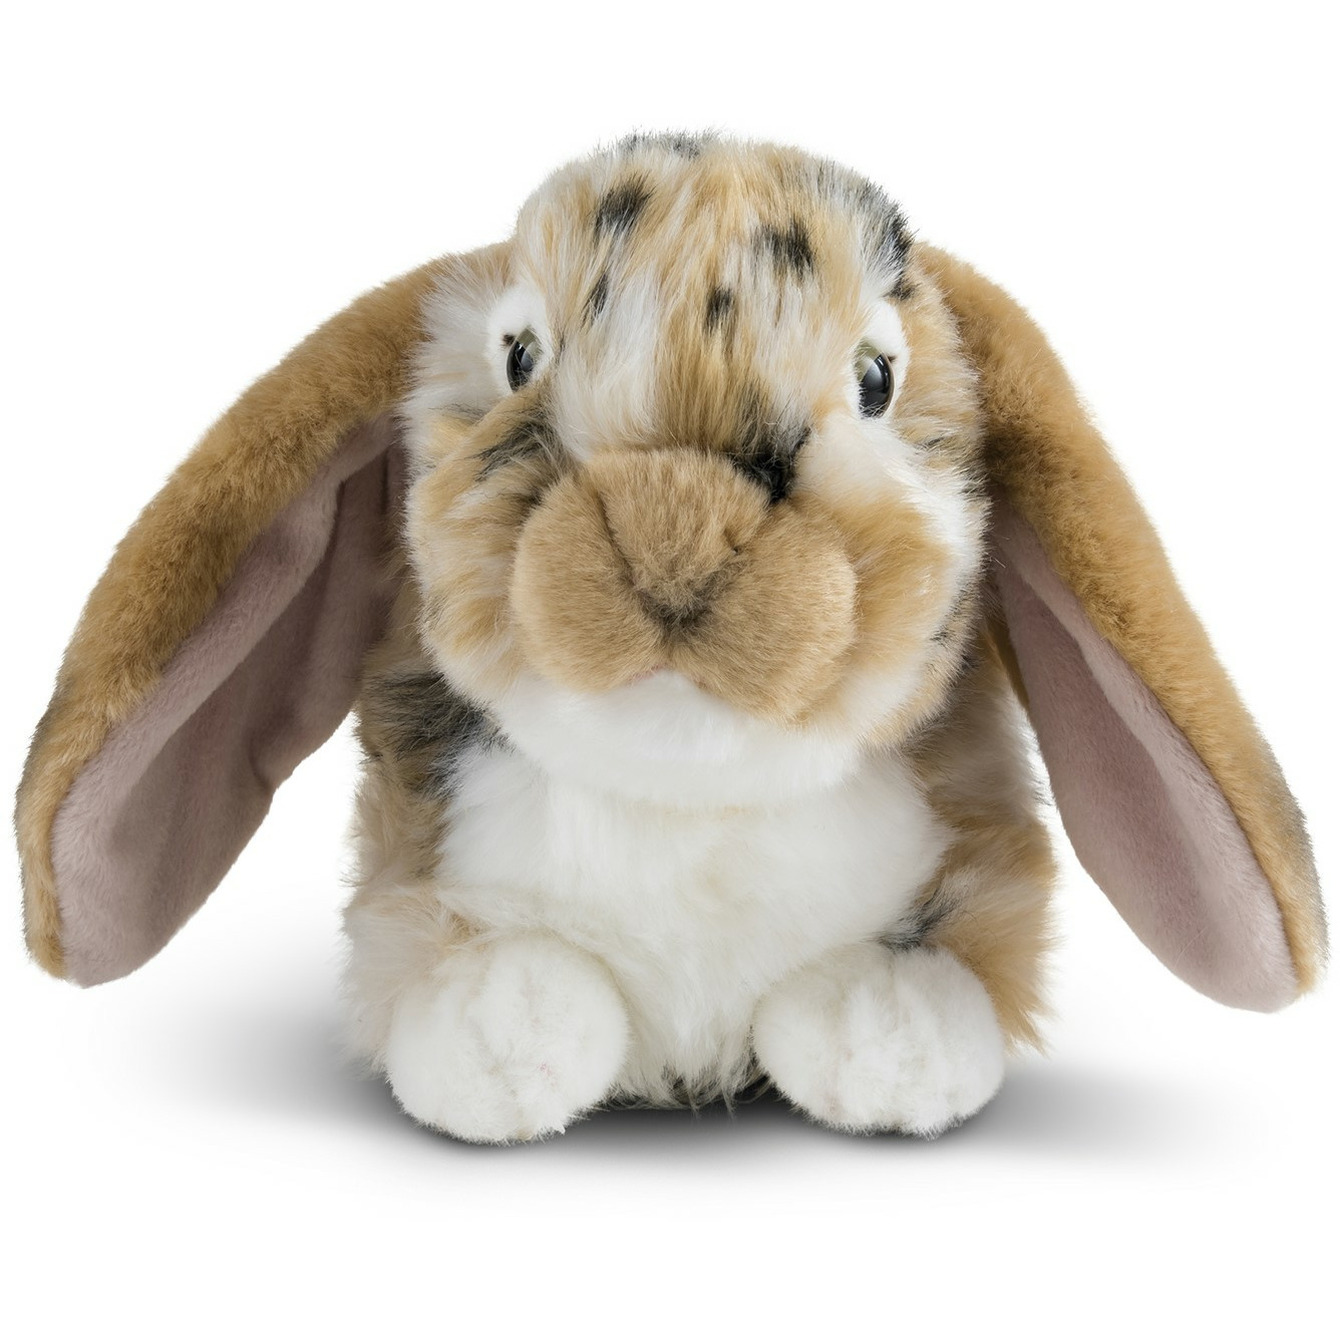 Pluche bruine/witte konijnen knuffel liggend 30 cm knuffeldieren